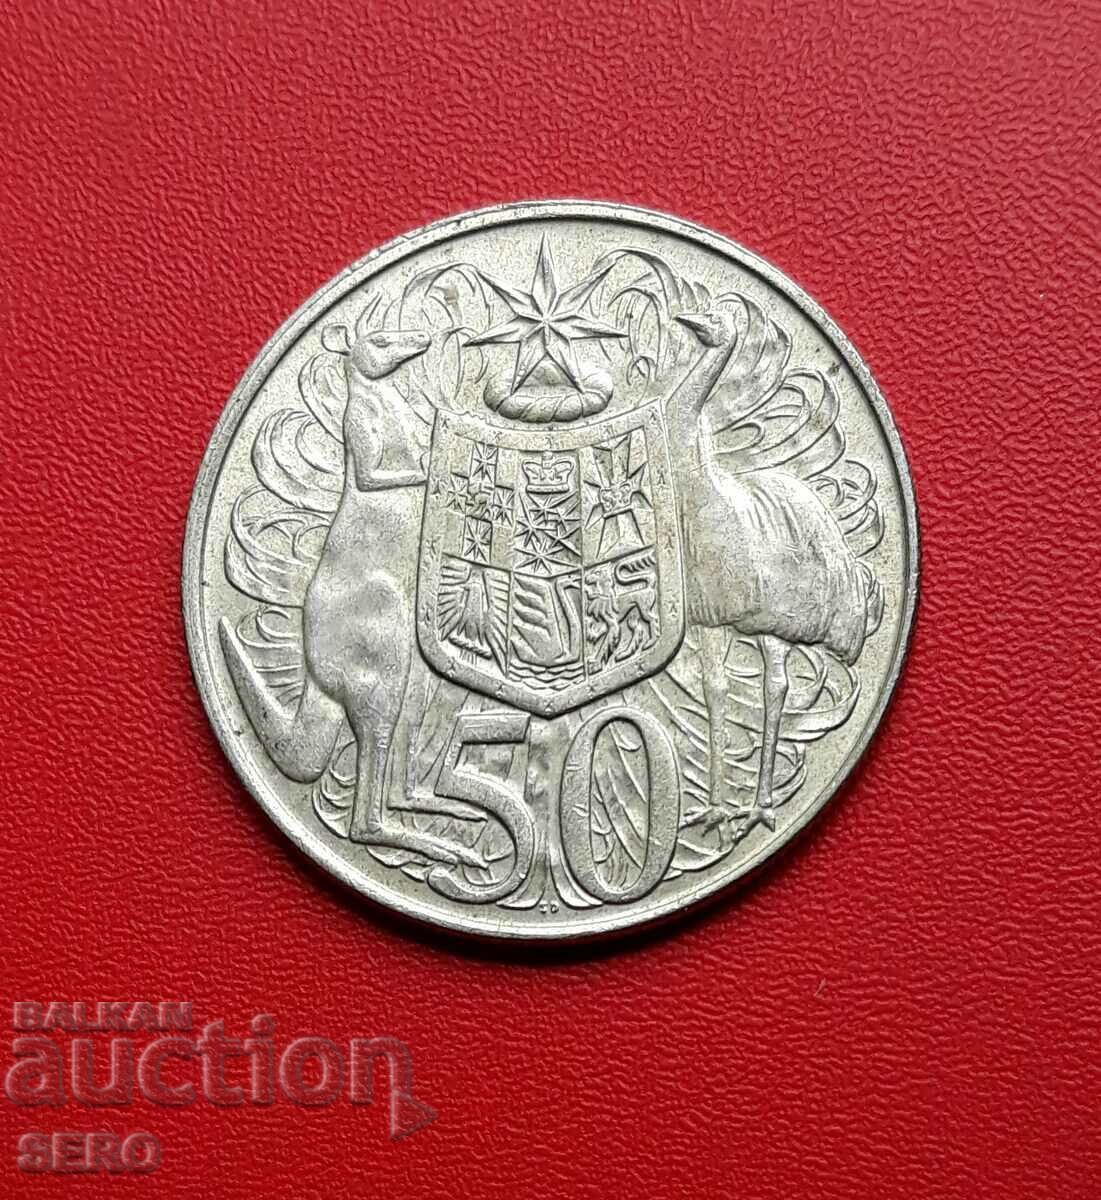 Australia-50 Cents 1966-Silver